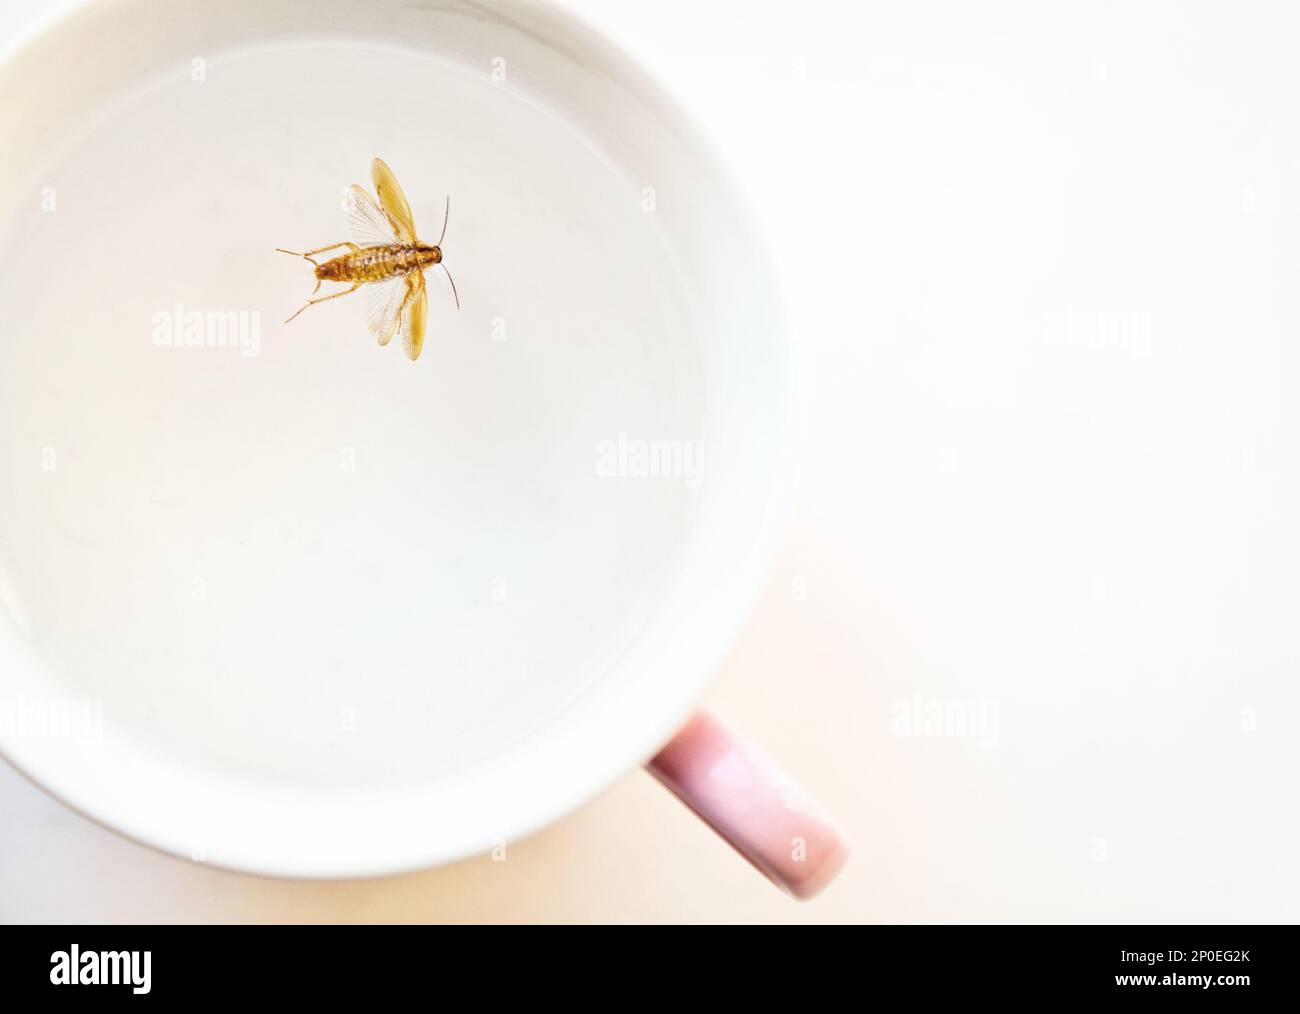 Morto scarafaggio marrone flottante in una coppa di rosa di close-up. Disgustoso scarafaggio insetto a nuotare in acqua potabile macro con spazio di copia Foto Stock